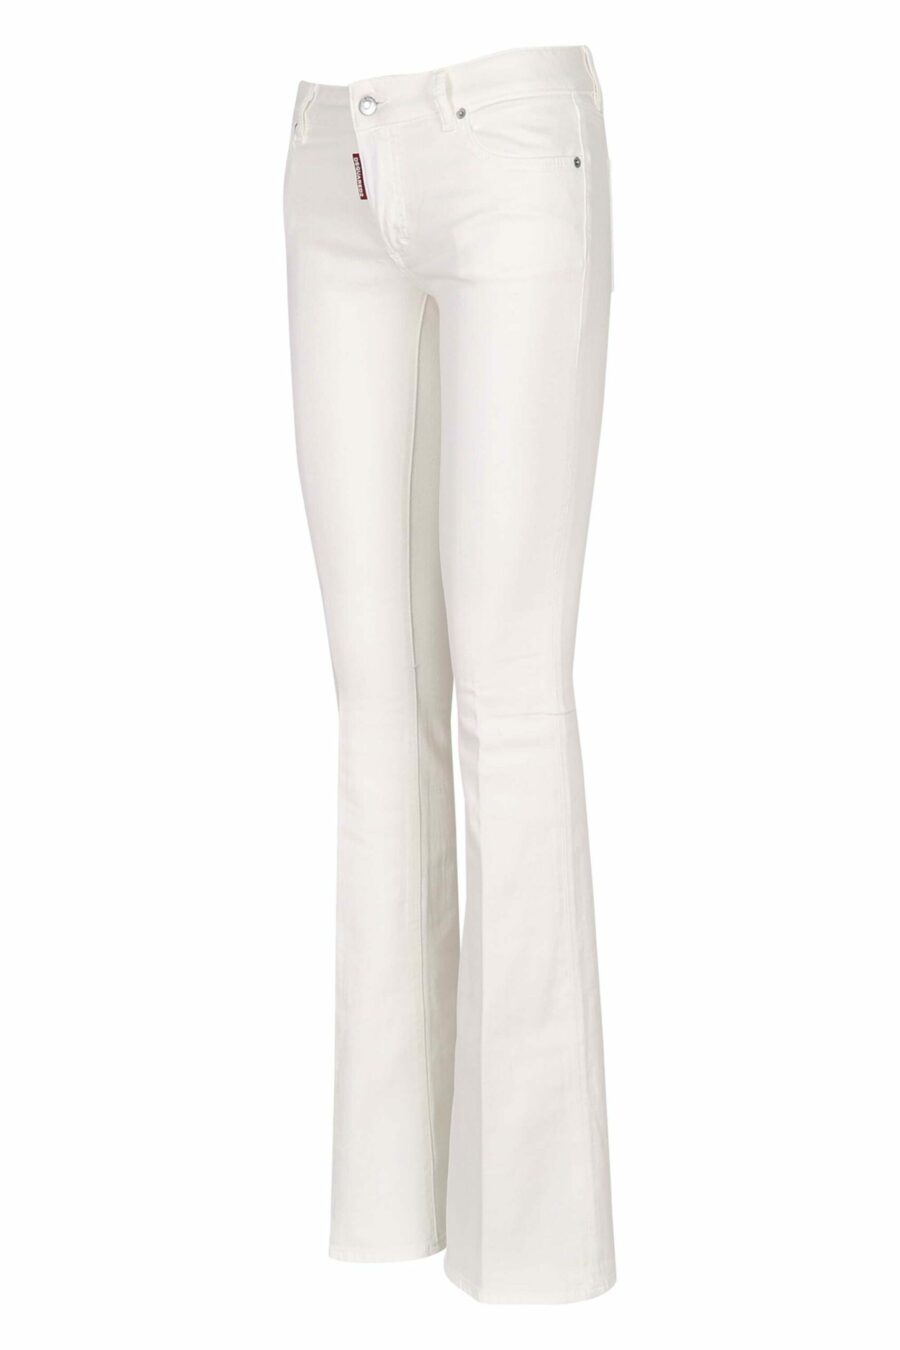 Pantalón vaquero blanco "twiggy jean" con bota ancha - 8054148307912 1 scaled